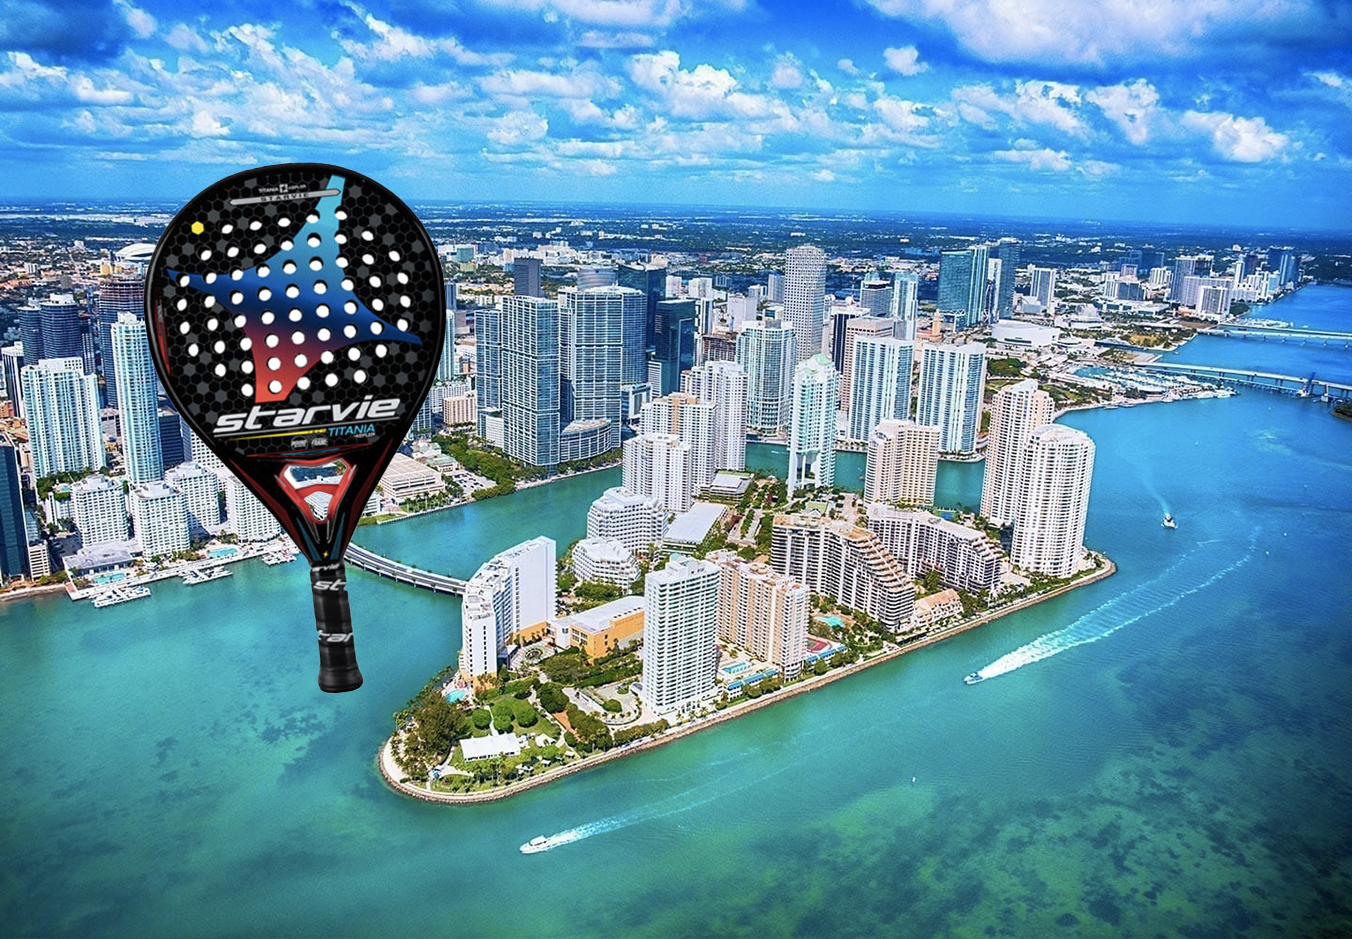 Donde jugar Padel en Miami?